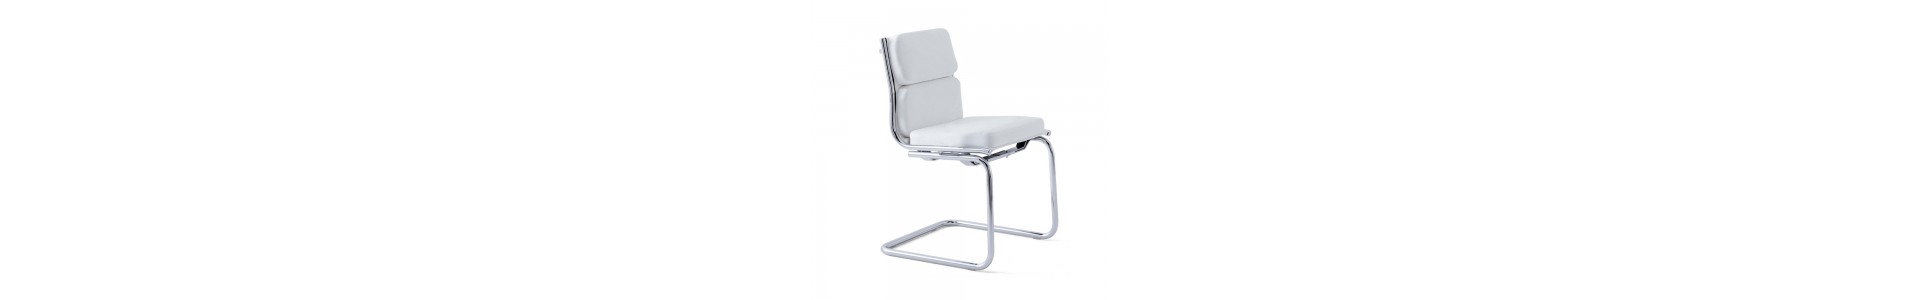 Catálogo de sillas confidente de Luxy. Sillas para oficina. Sillas de diseño italiano Luxy.